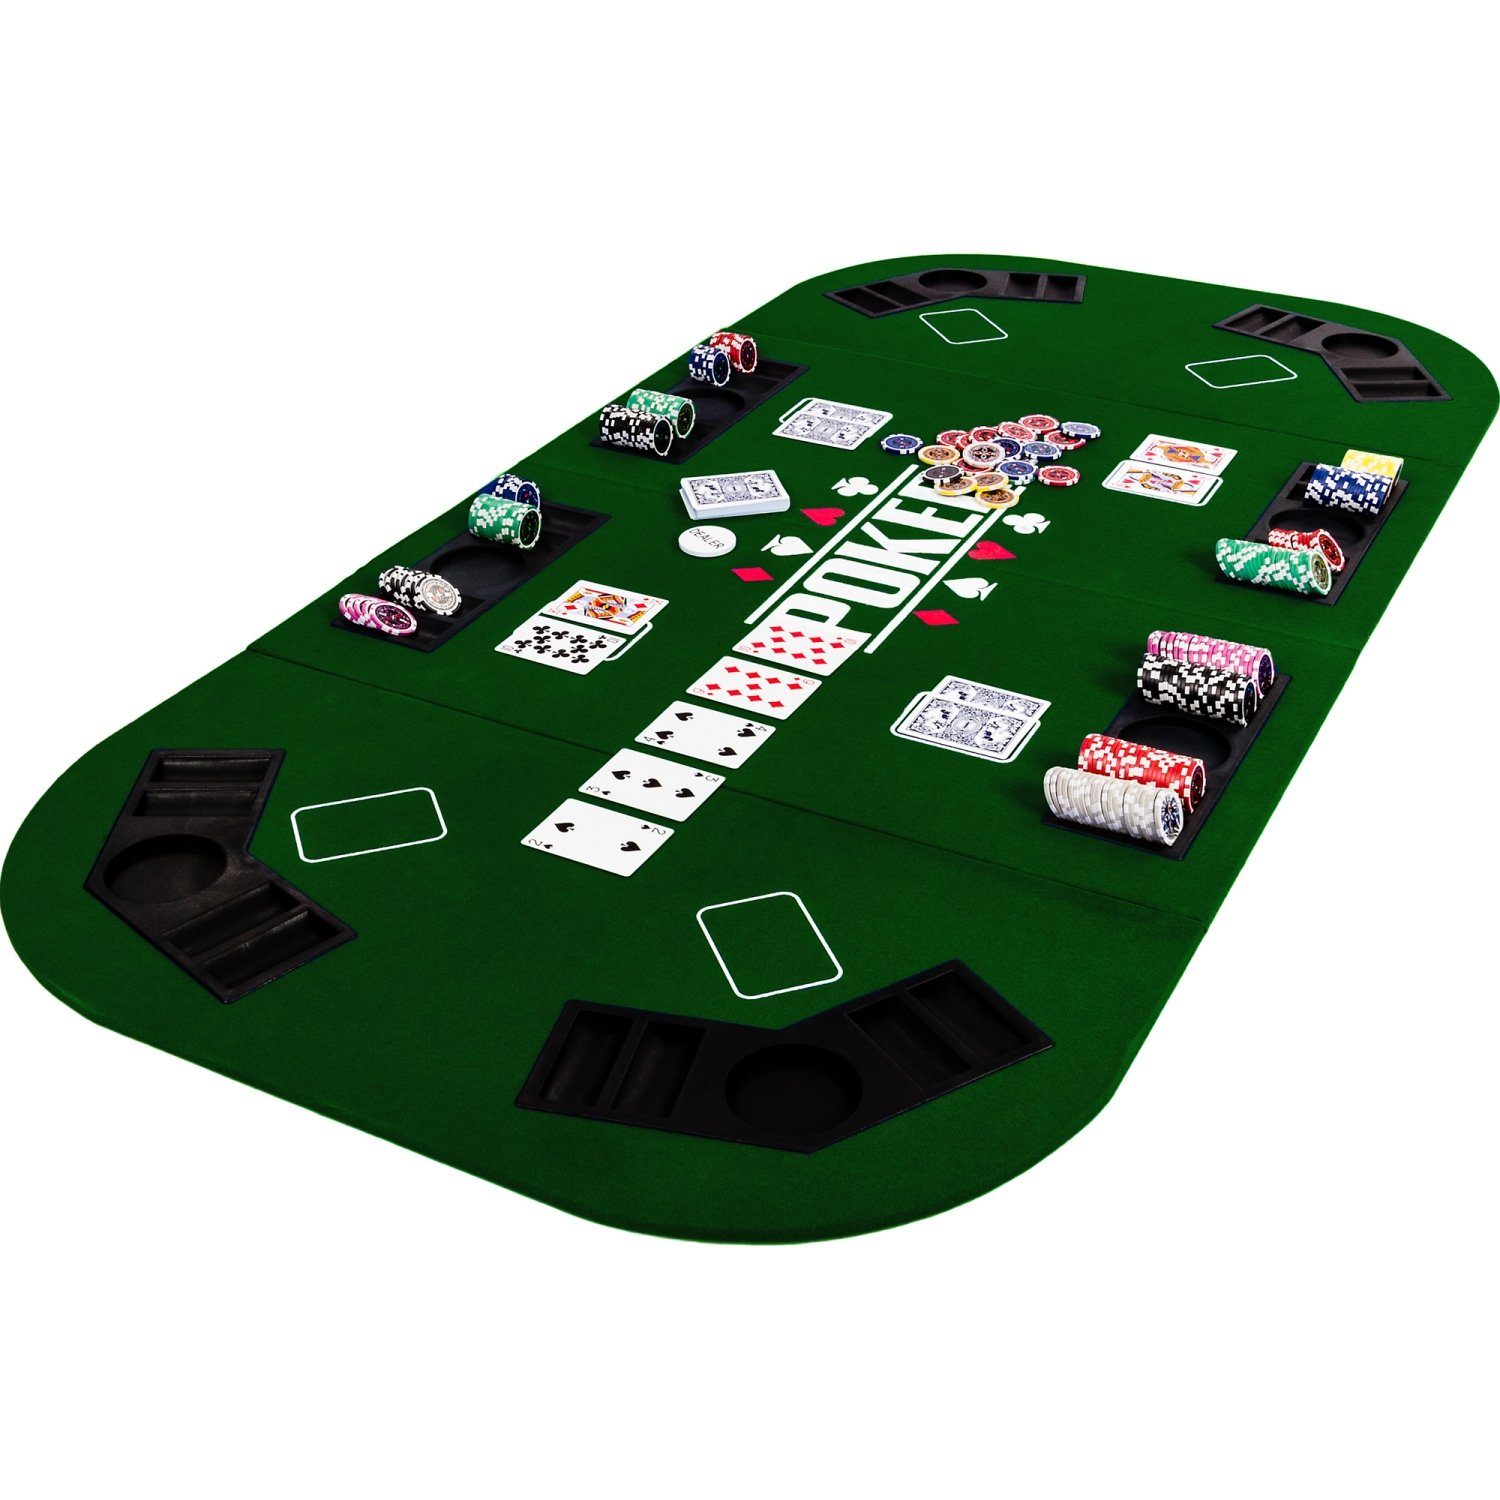 GAMES PLANET Spiel, Games Planet Faltbare Pokerauflage „Straight“, 2-8 Spieler, Maße 160x80 cm, MDF Platte, 8 Getränkehalter, 8 Chiptrays Grün